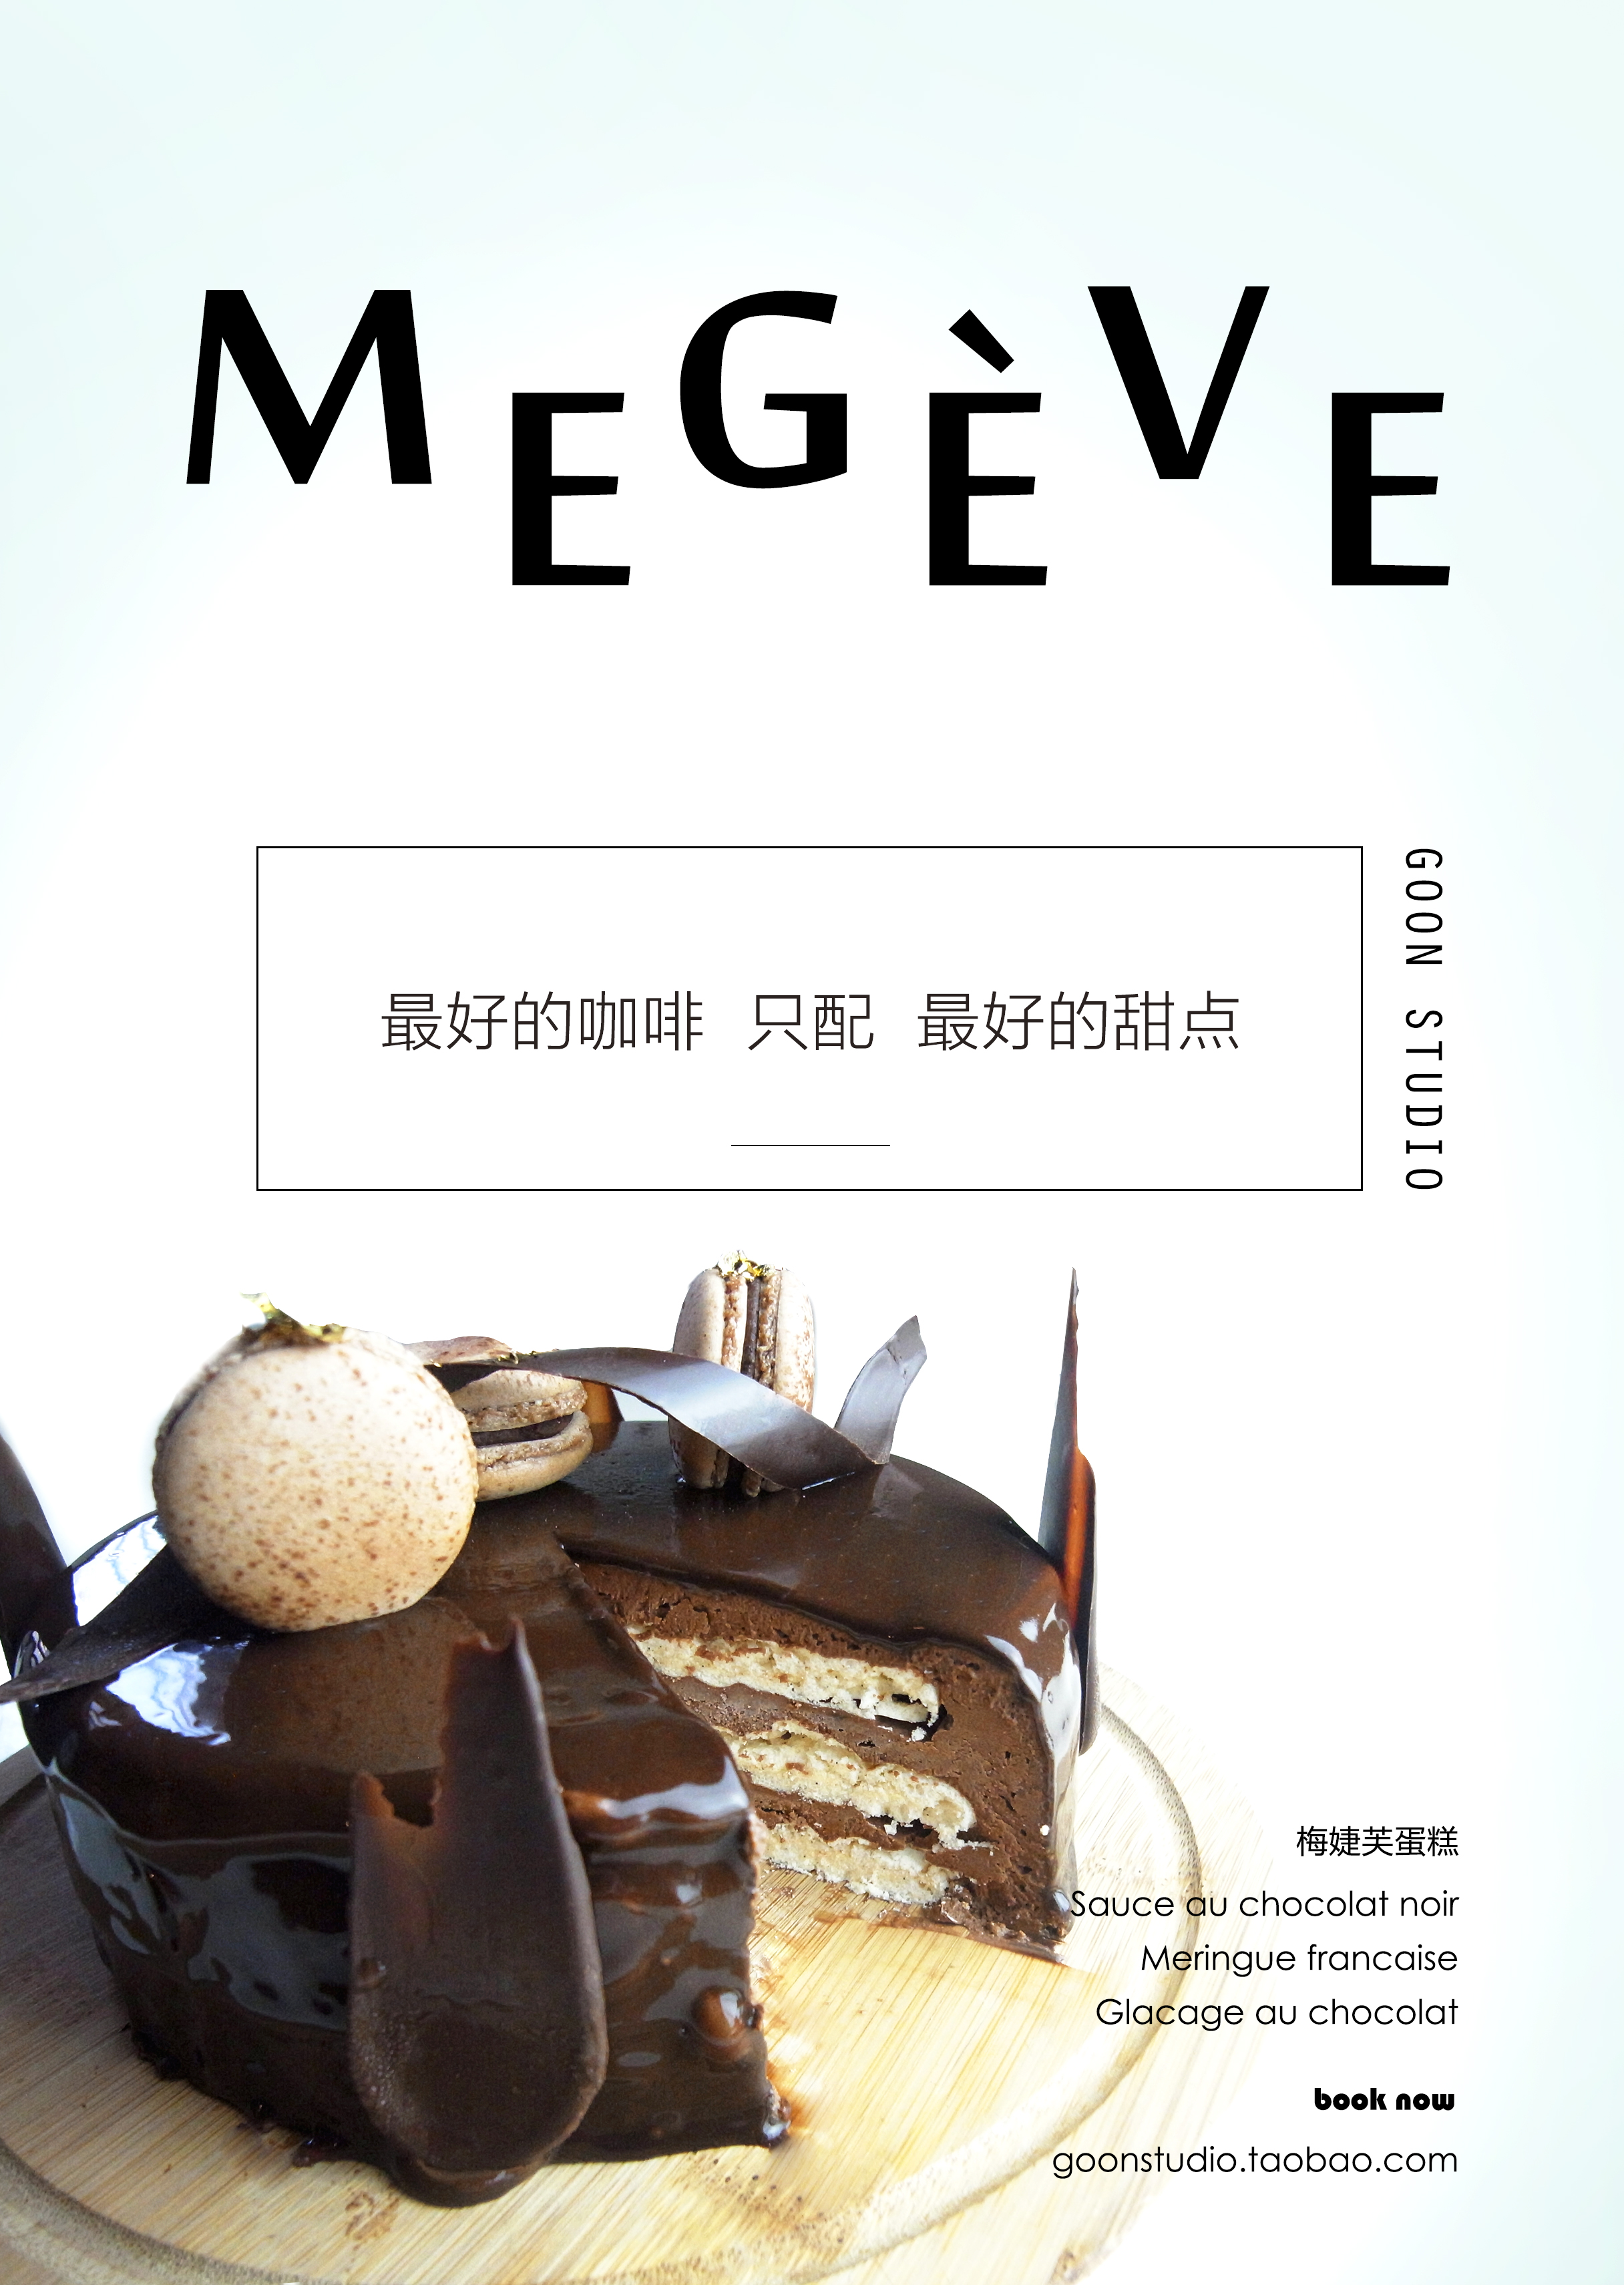 法式甜点——梅婕芙蛋糕megeve -goon studio